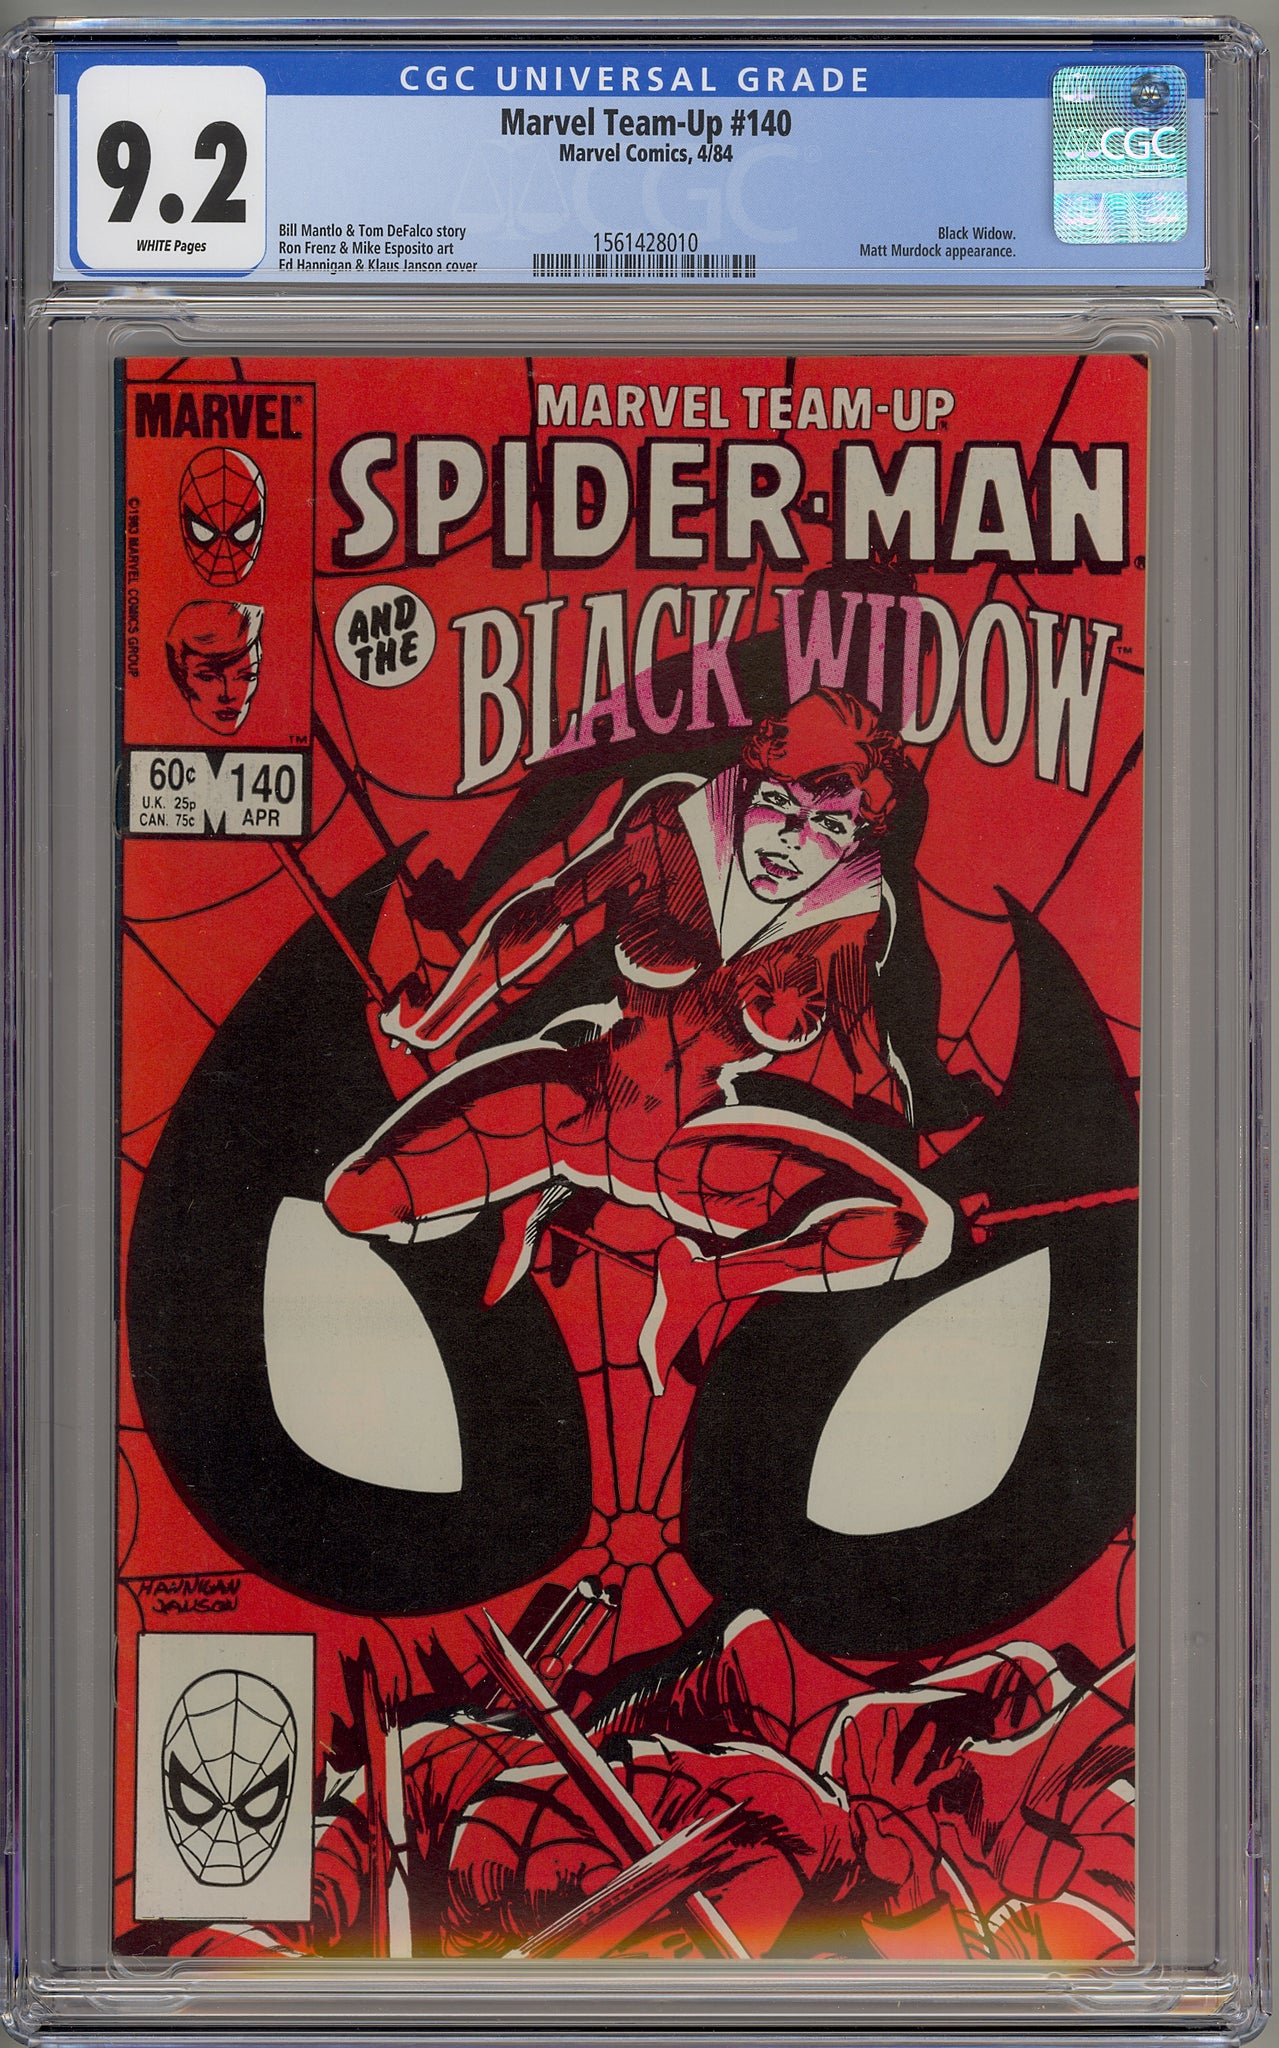 Marvel Team-Up #140 (1984) Spider-Man, Black Widow